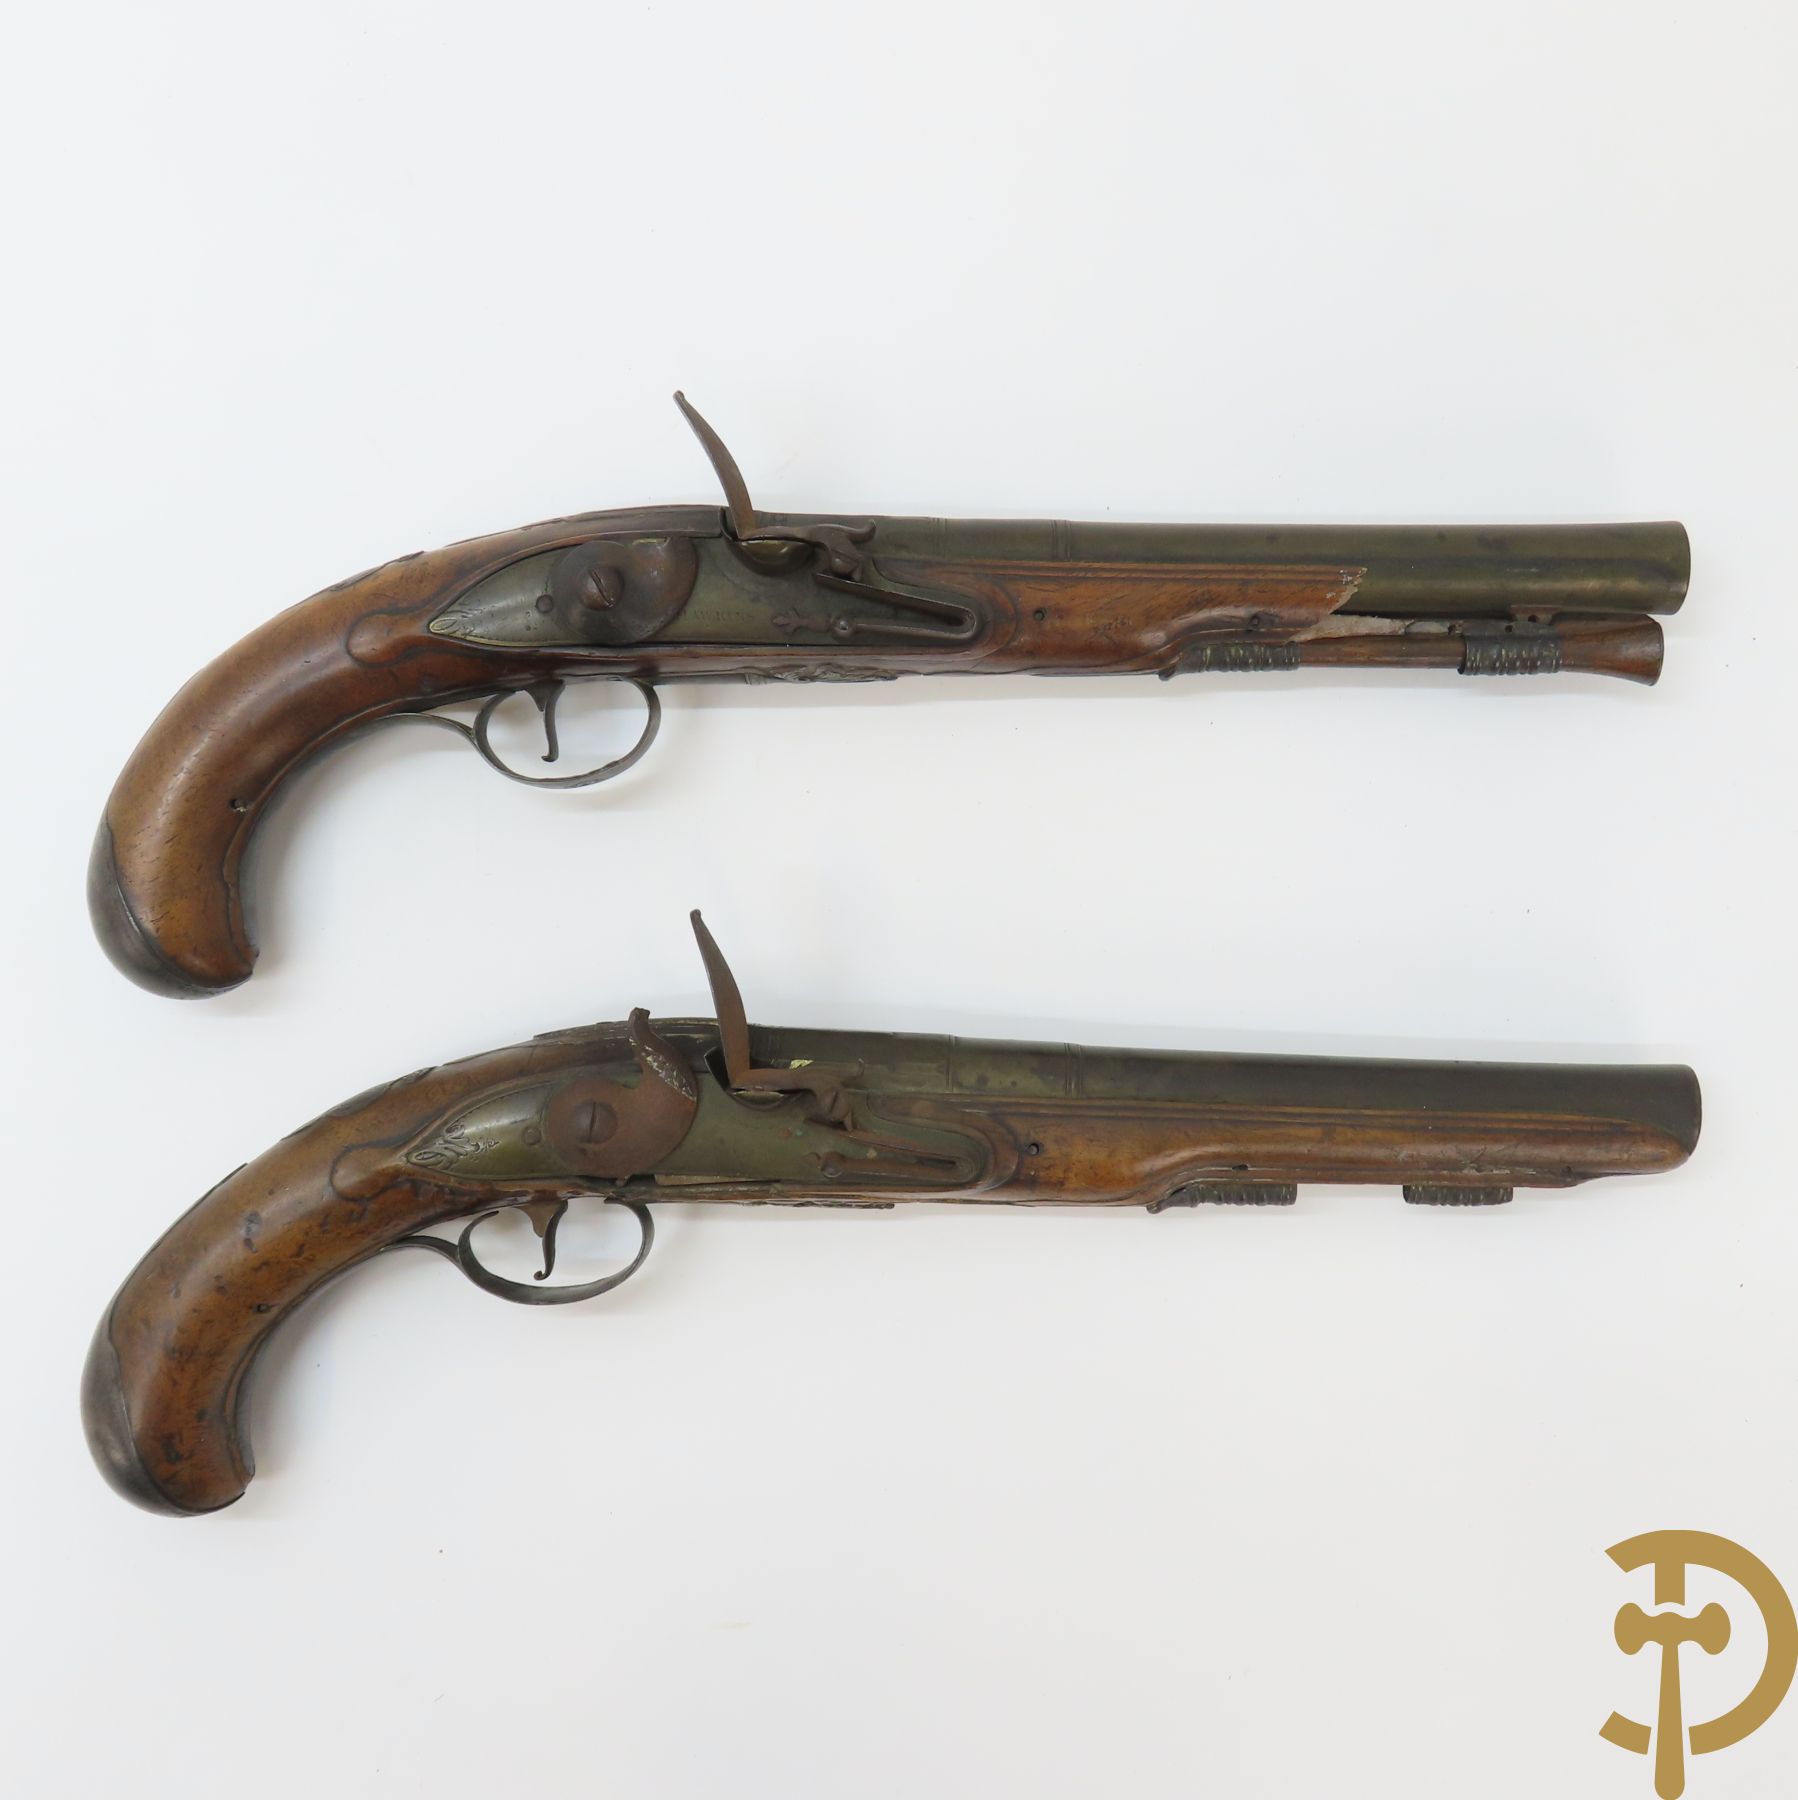 Paar dueleerpistolen, gemerkt London Hawkins, mooi geornamenteerd - gestempeld en geciseleerd